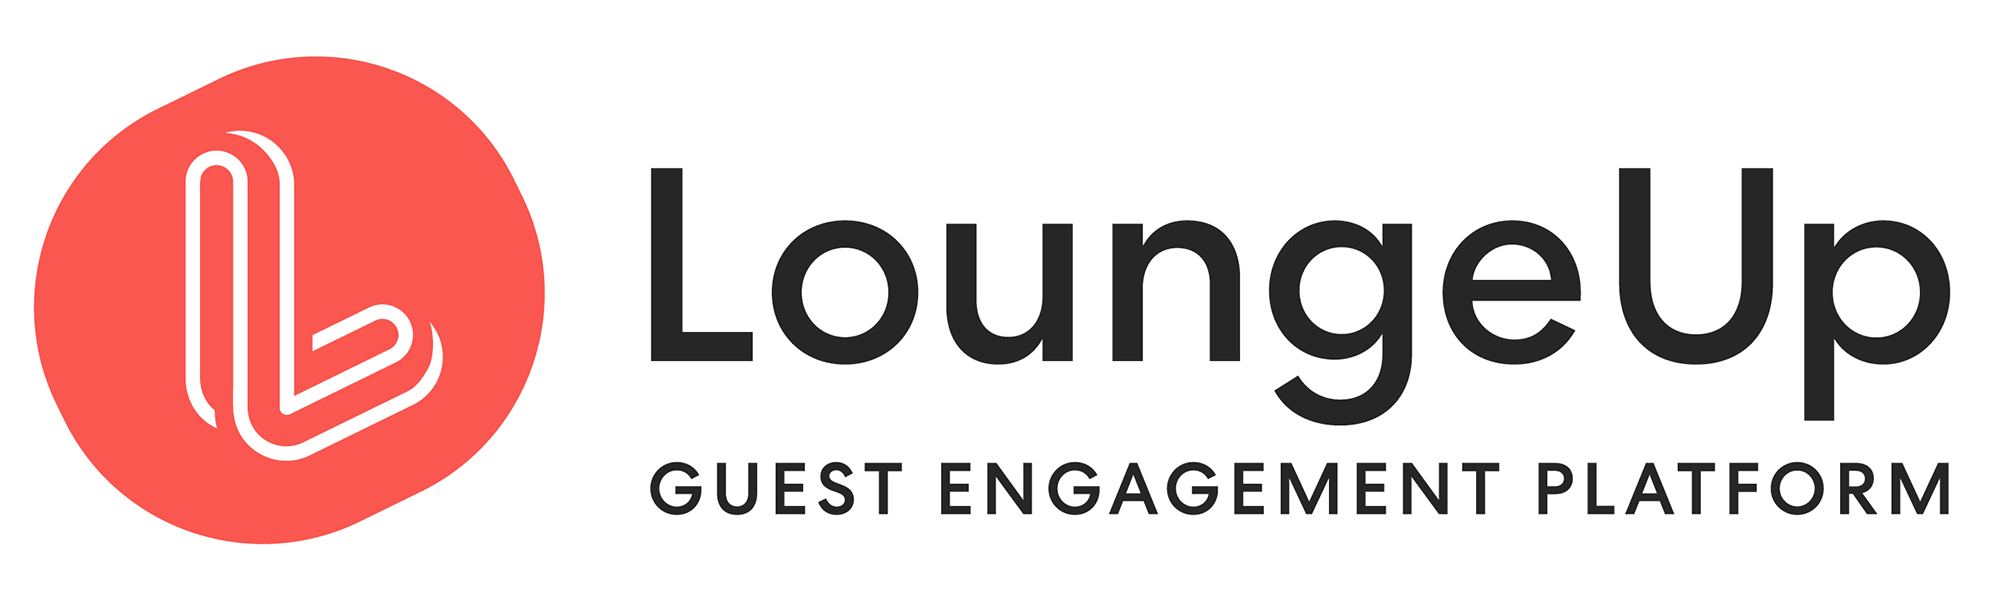 LoungeUp-logo-2000x596